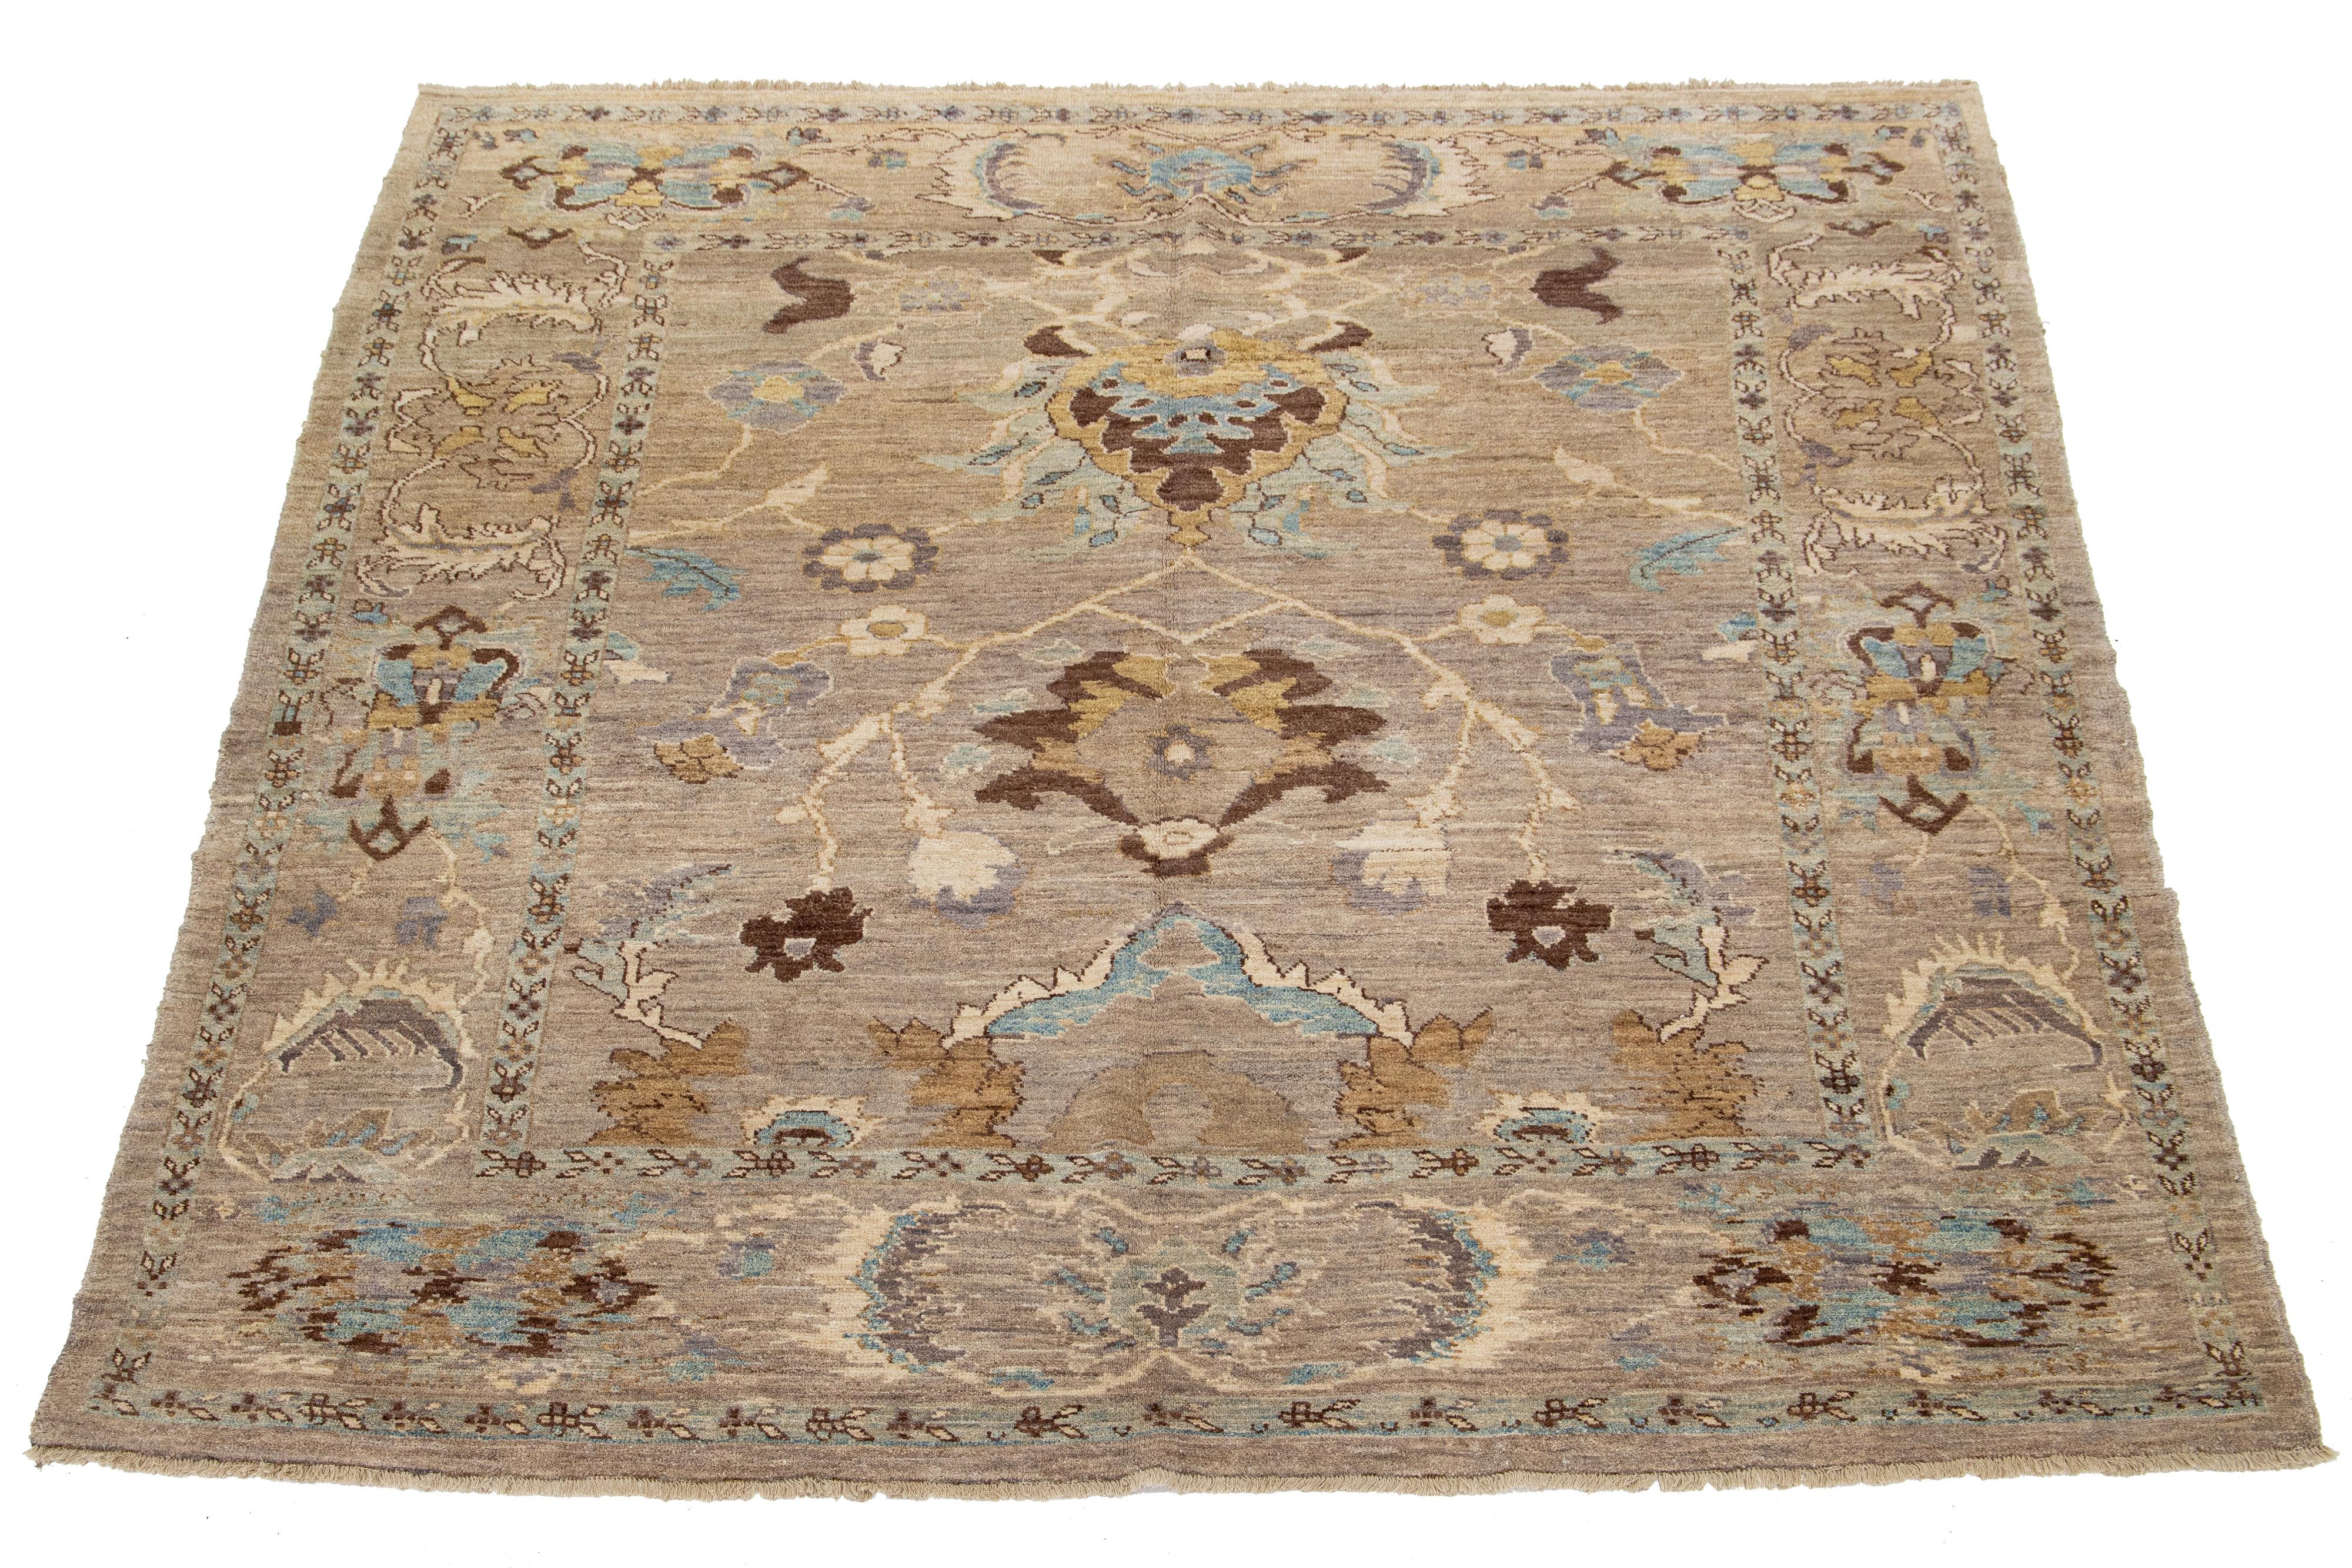 Dieser Teppich aus persischer Wolle ist handgeknüpft und zeigt ein schönes Muster in Blau, Beige und Braun auf einem hellbraunen Feld.

Dieser Teppich misst 8'1